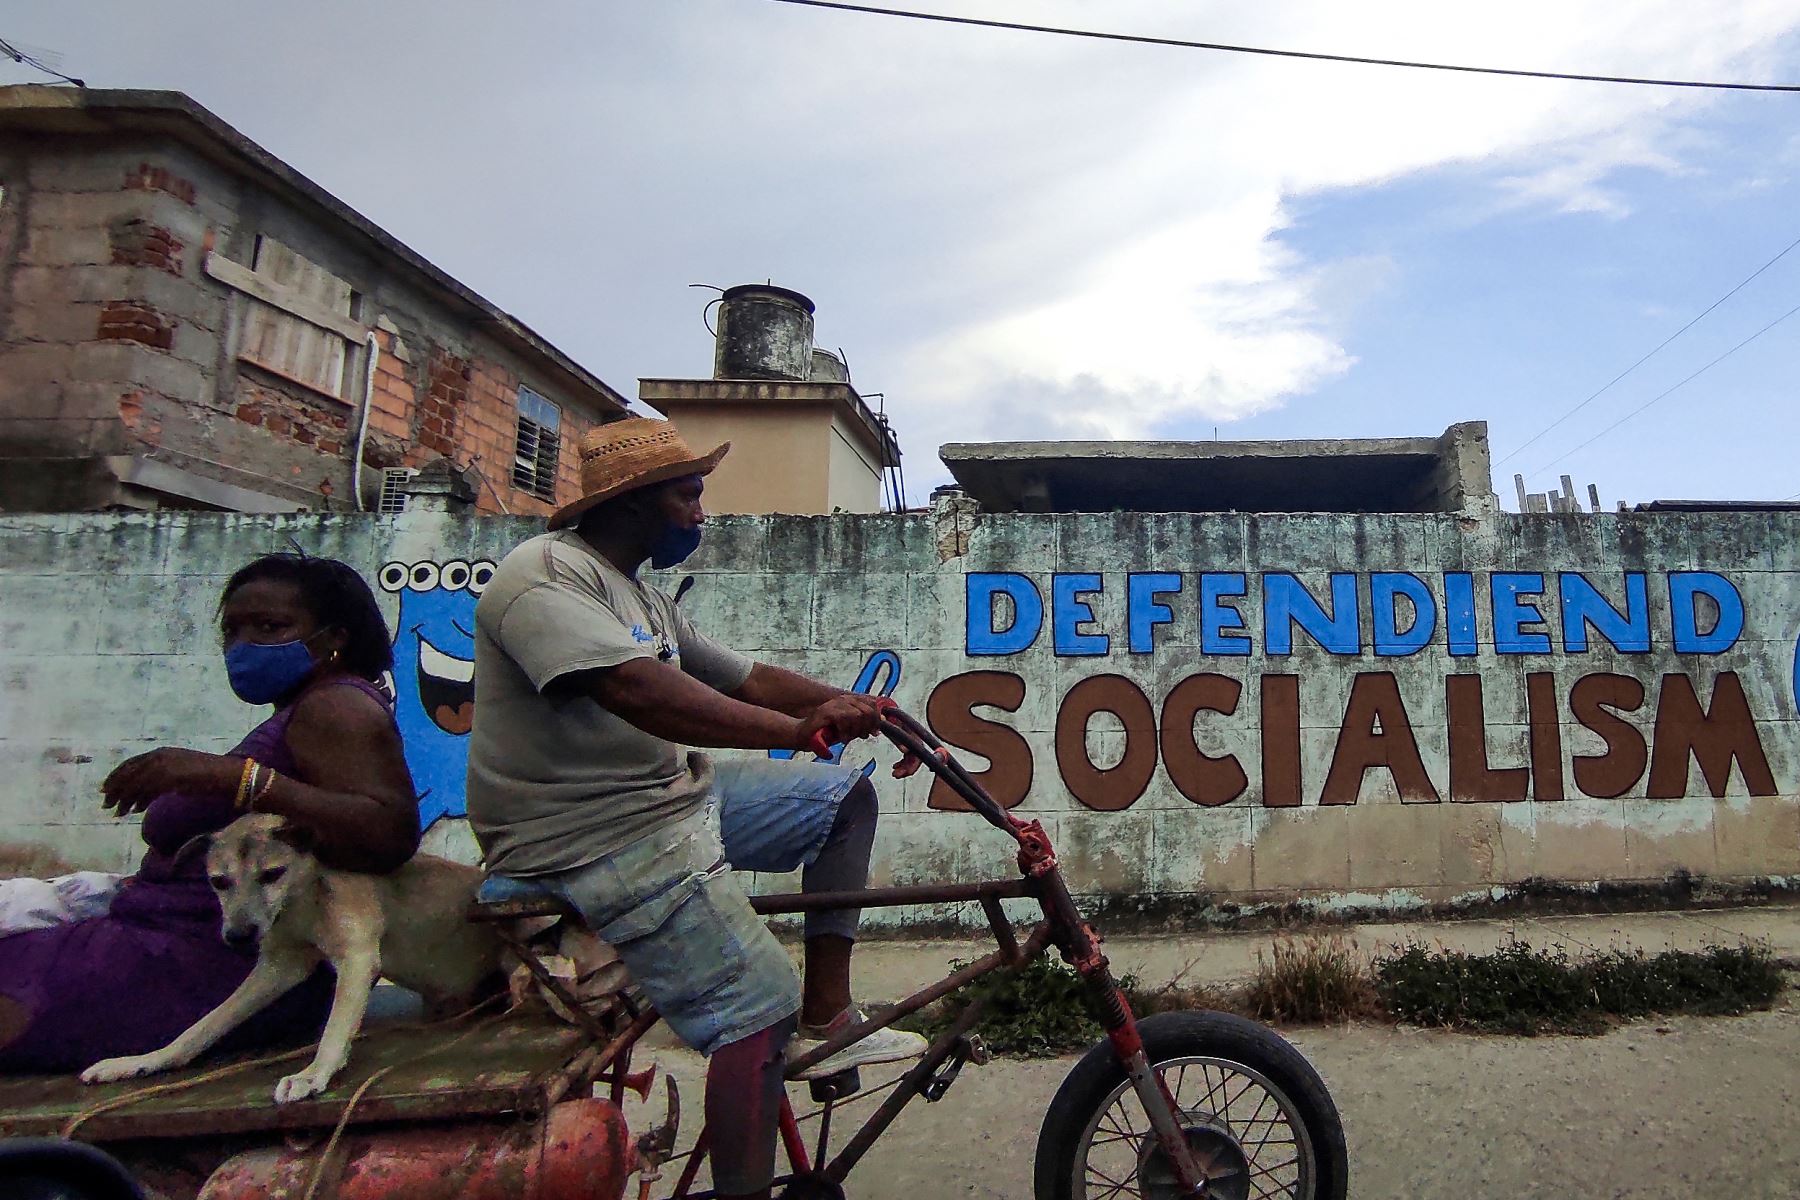 La gente monta un triciclo cerca de un graffiti que dice:  Defendiendo el socialismo en La Habana. Foto: AFP